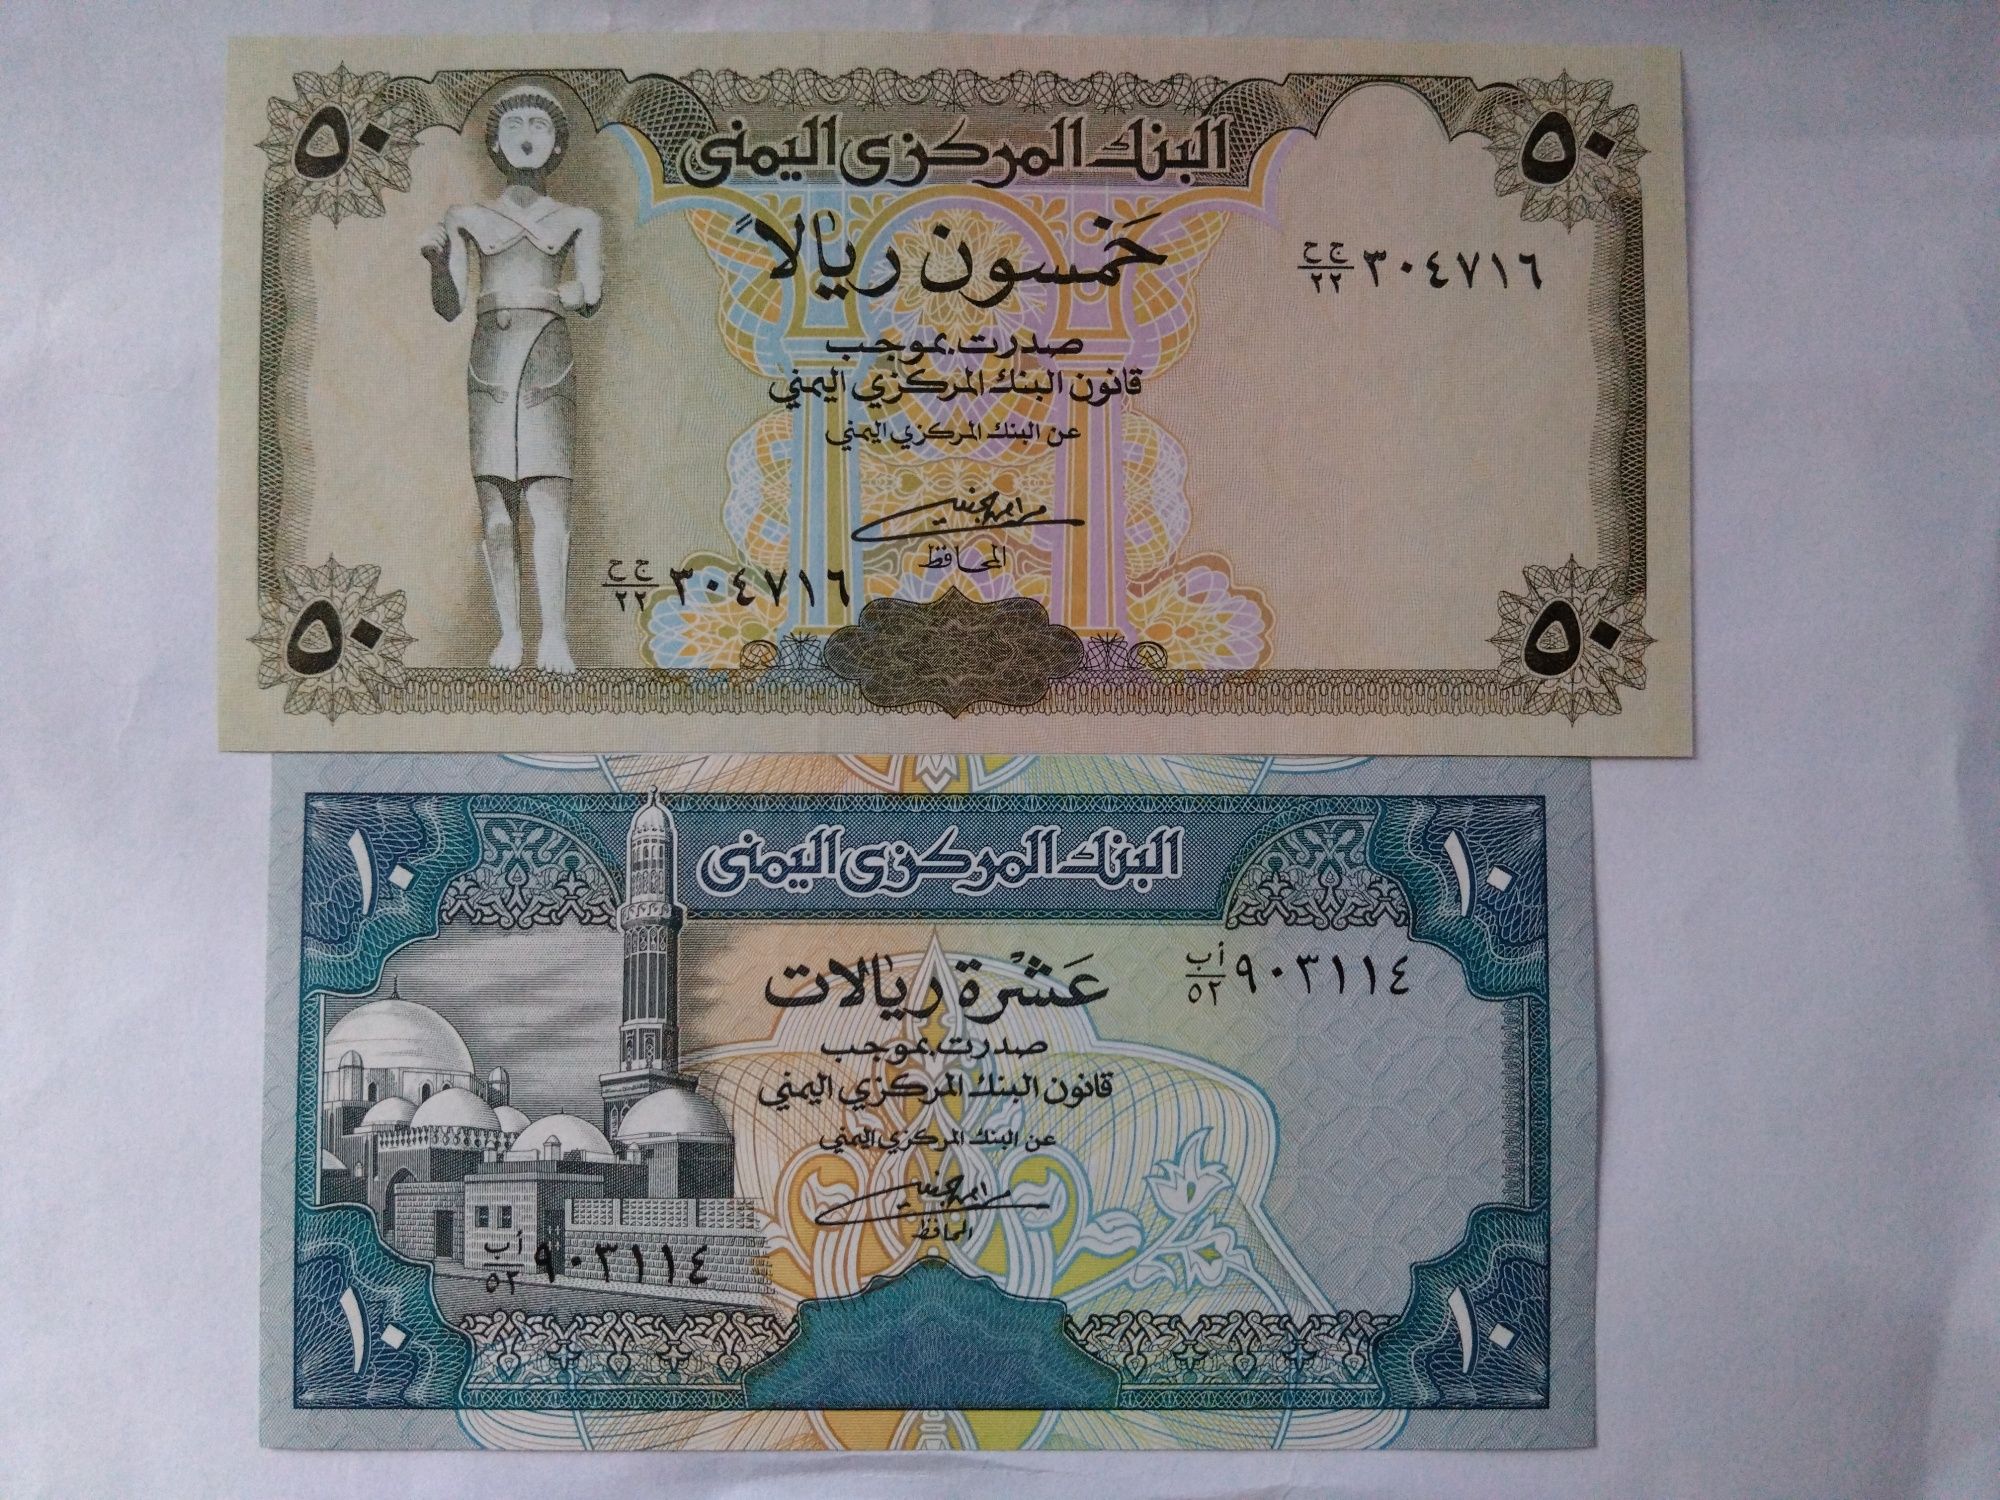 Banknoty Jemen 10 i 50 Riali